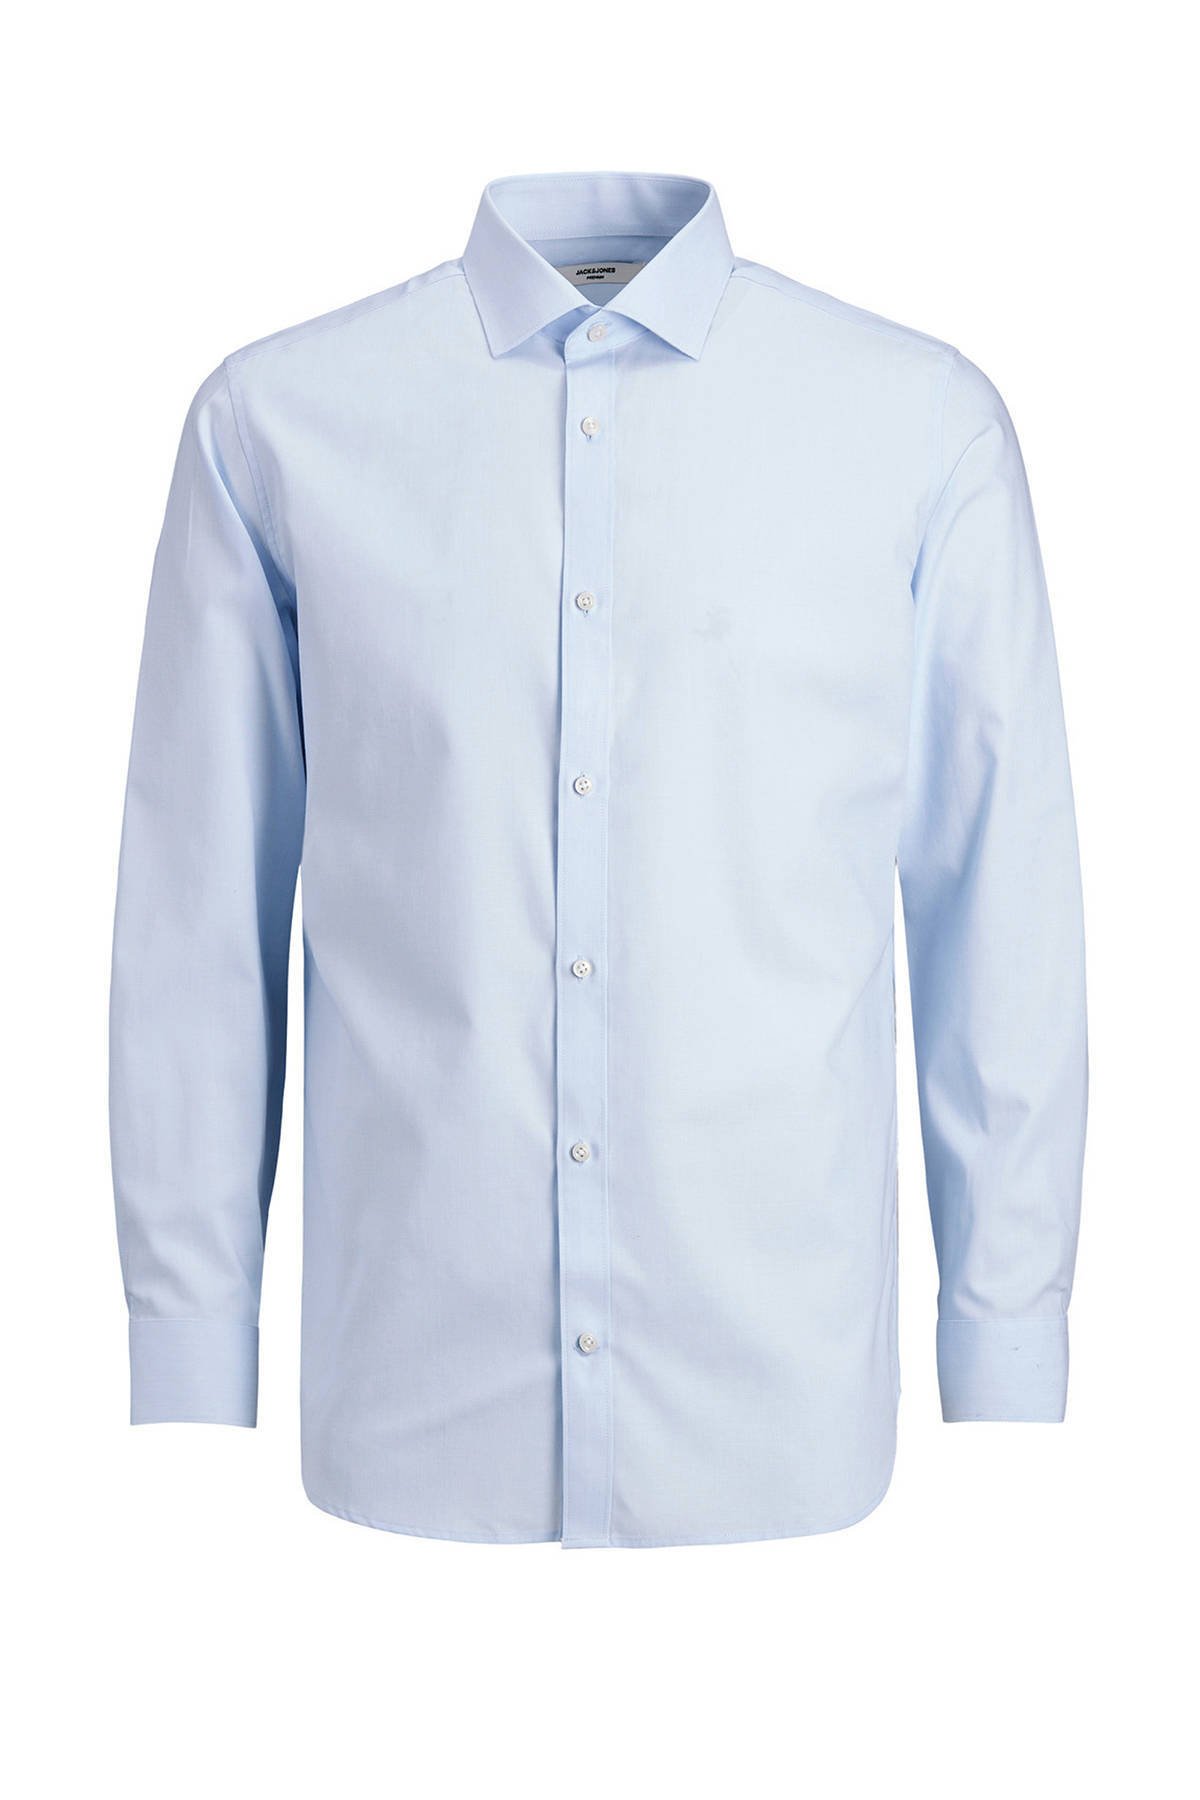 JACK & JONES PREMIUM slim fit overhemd JPRBLAROYAL van biologisch katoen lichtblauw online kopen